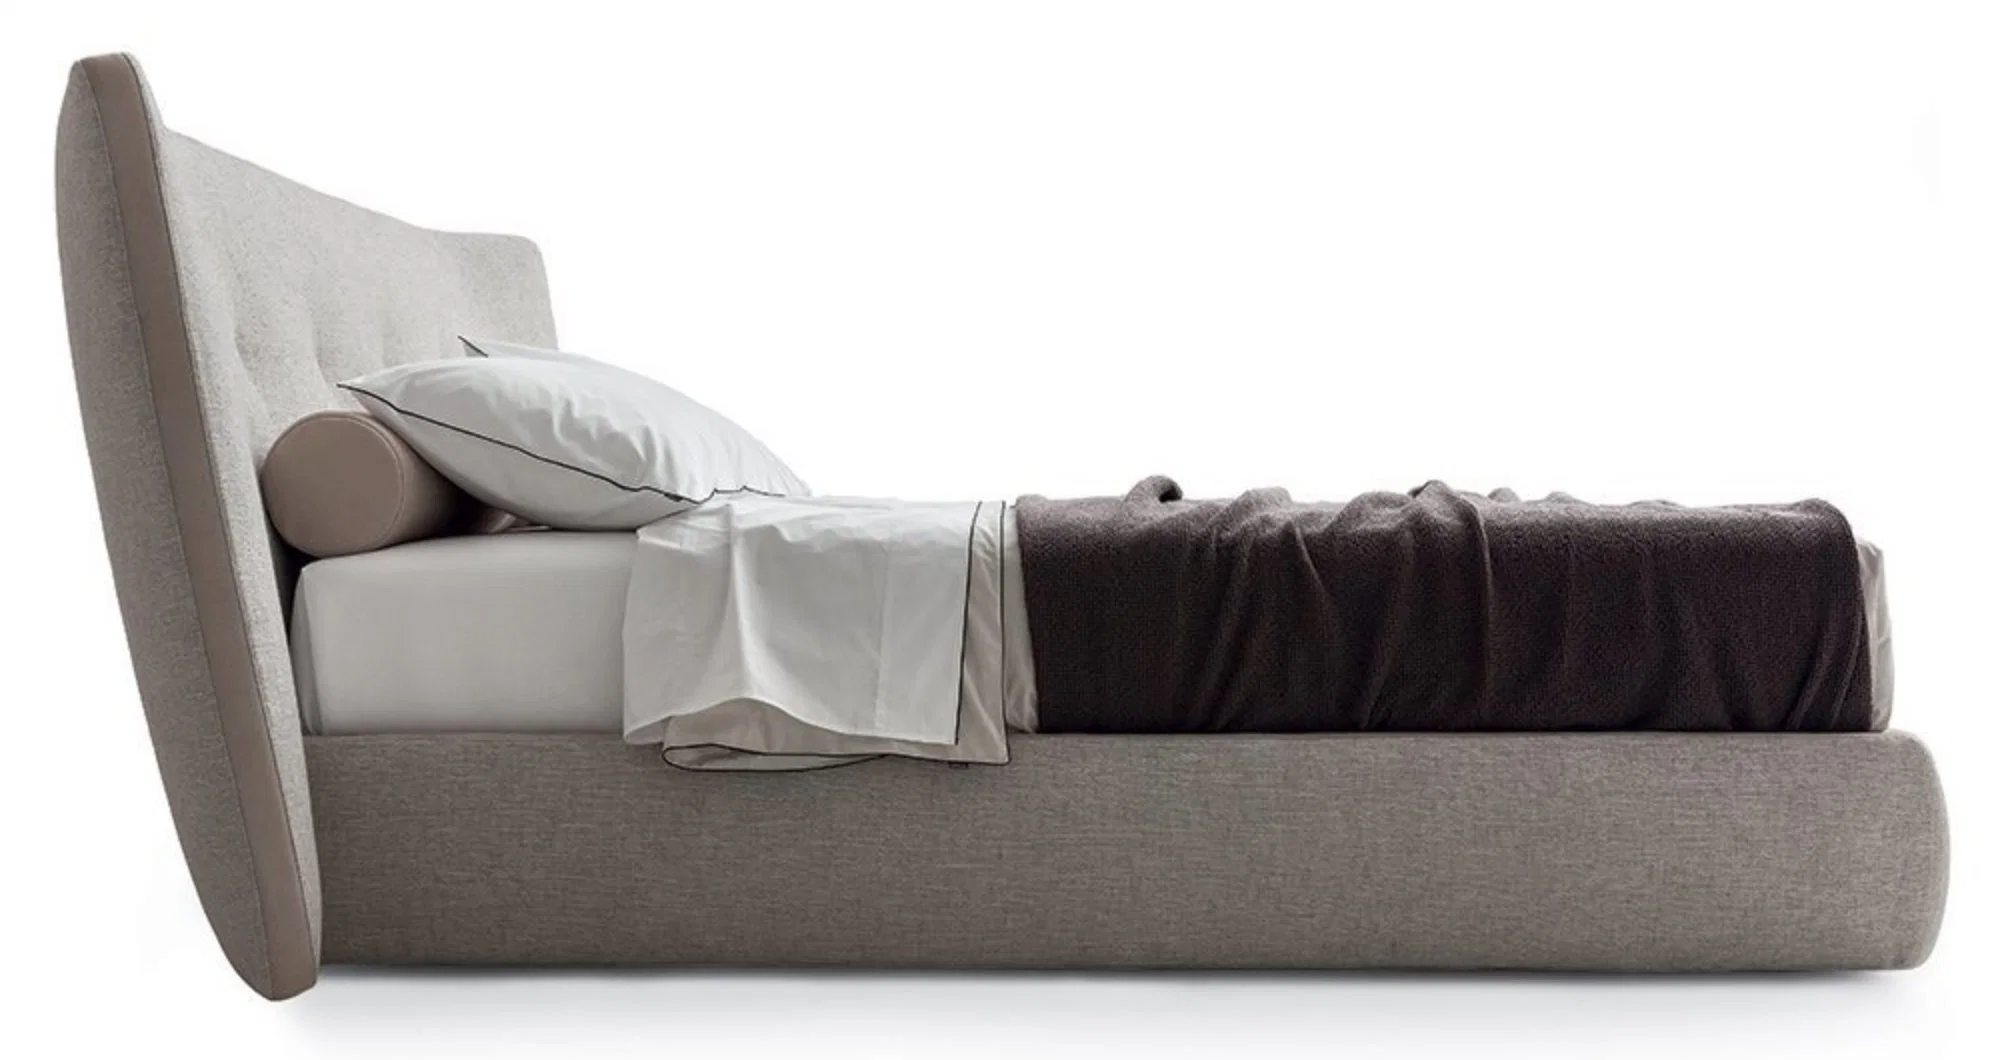 OEM/ODM европейской роскошью современной мебелью с одной спальней Letto выставке BETT Tufted мягкая кровать размера кинг деревянные кровати из натуральной кожи